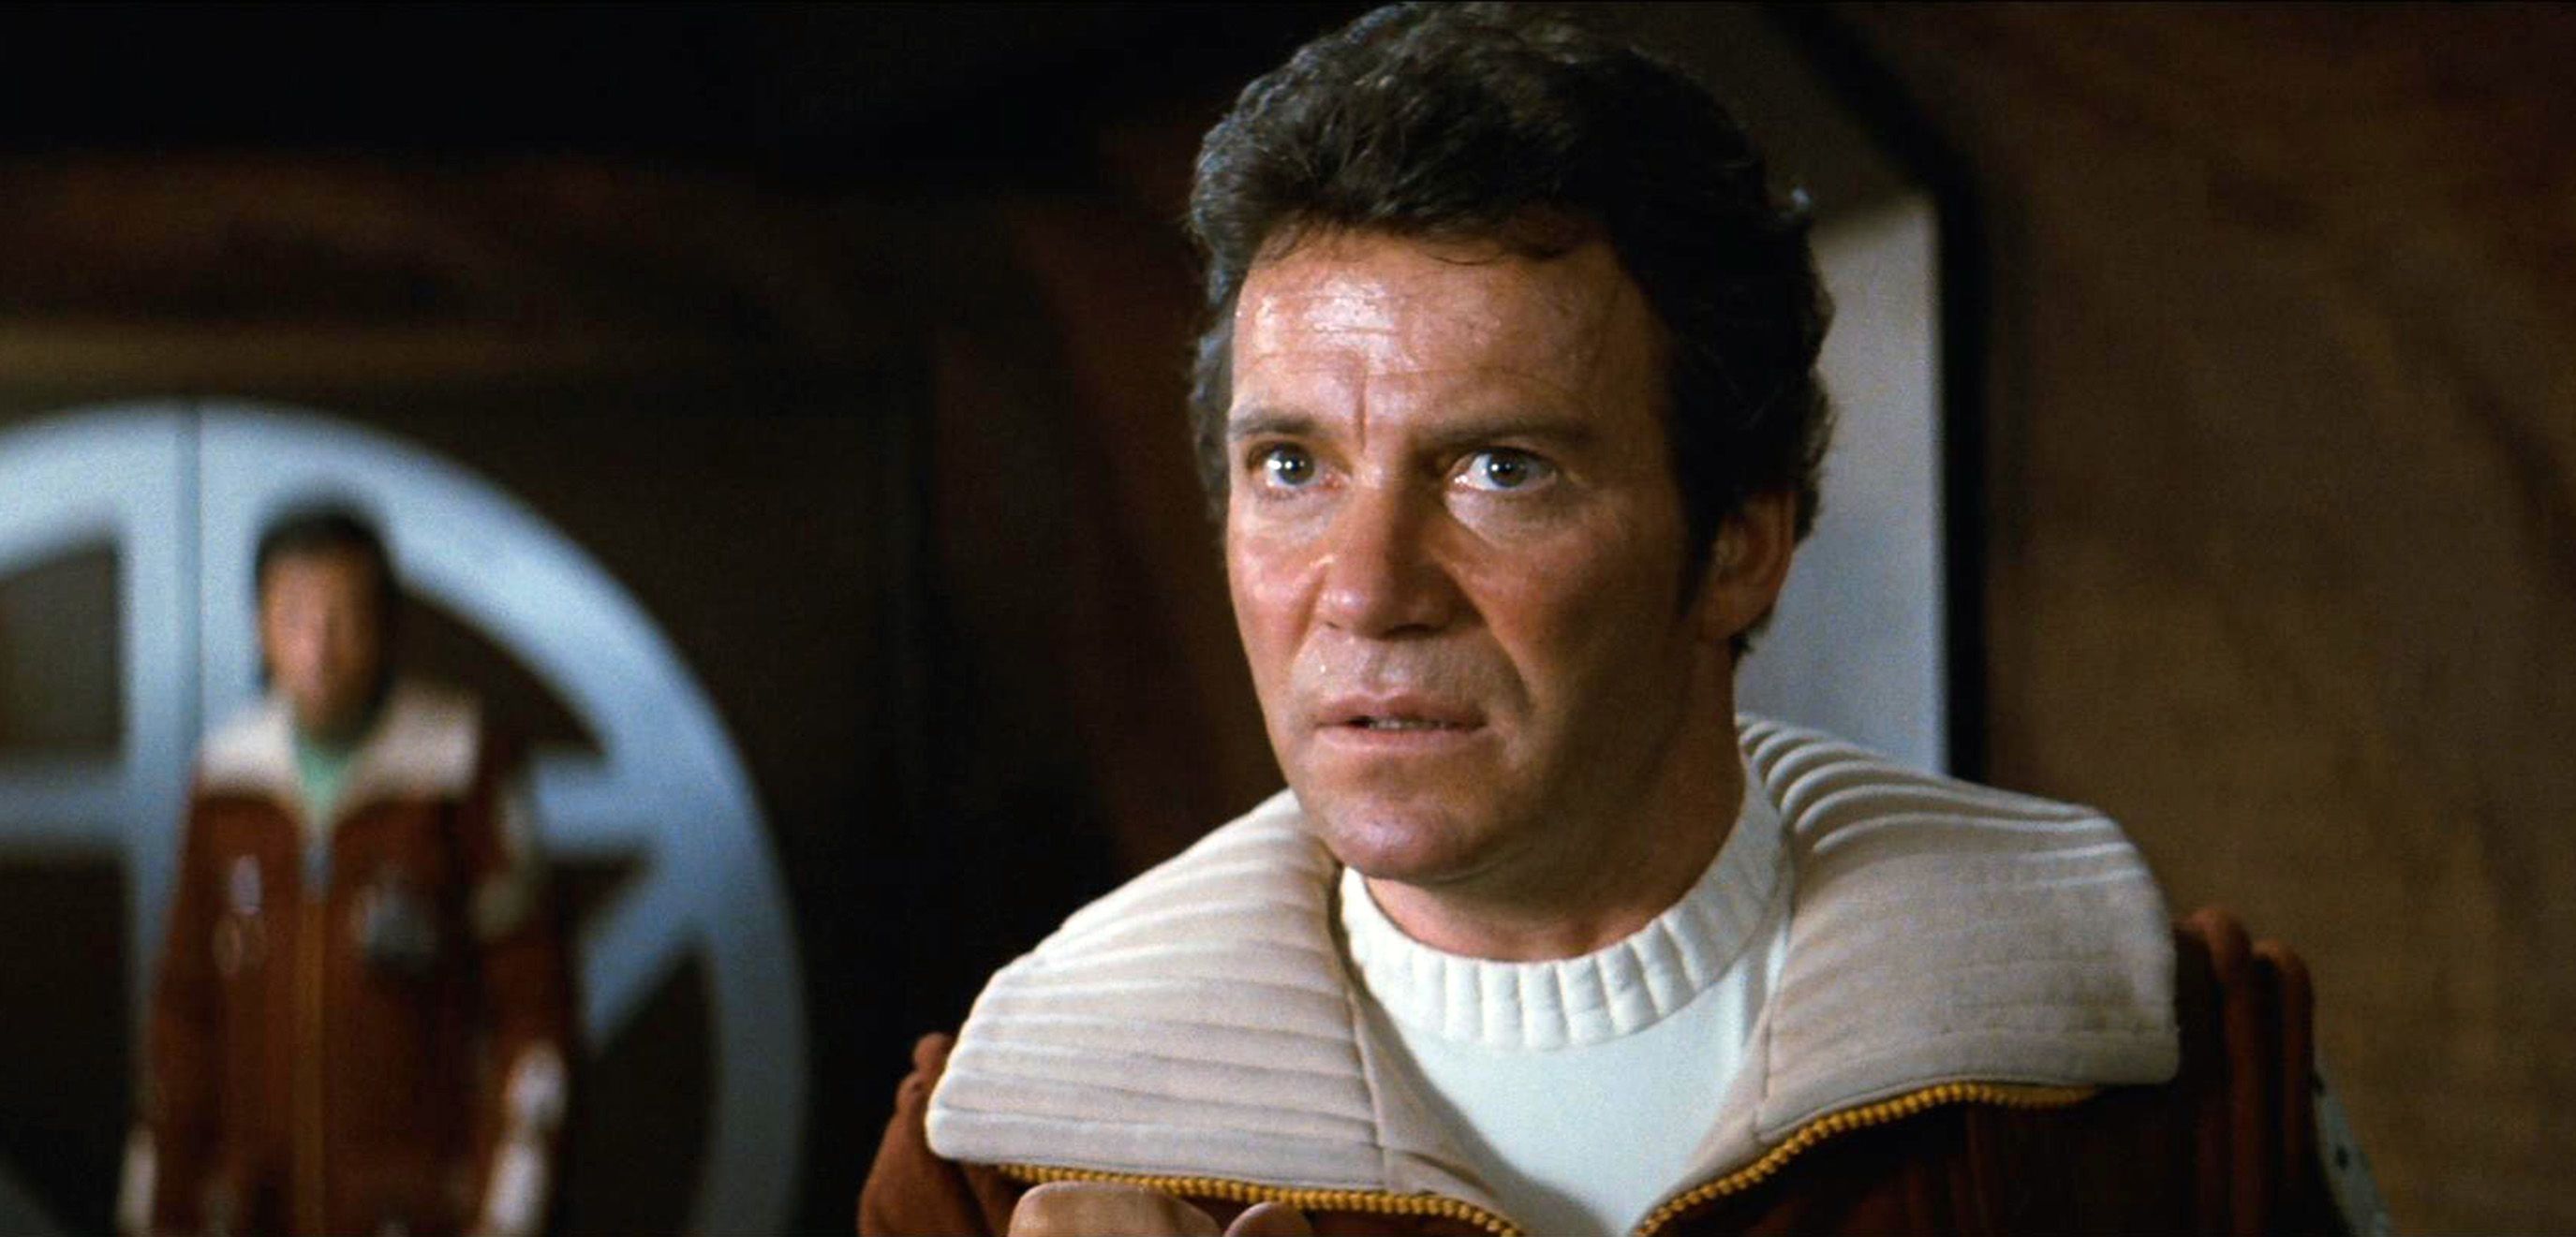 William Shatner as Kirk in Star Trek II